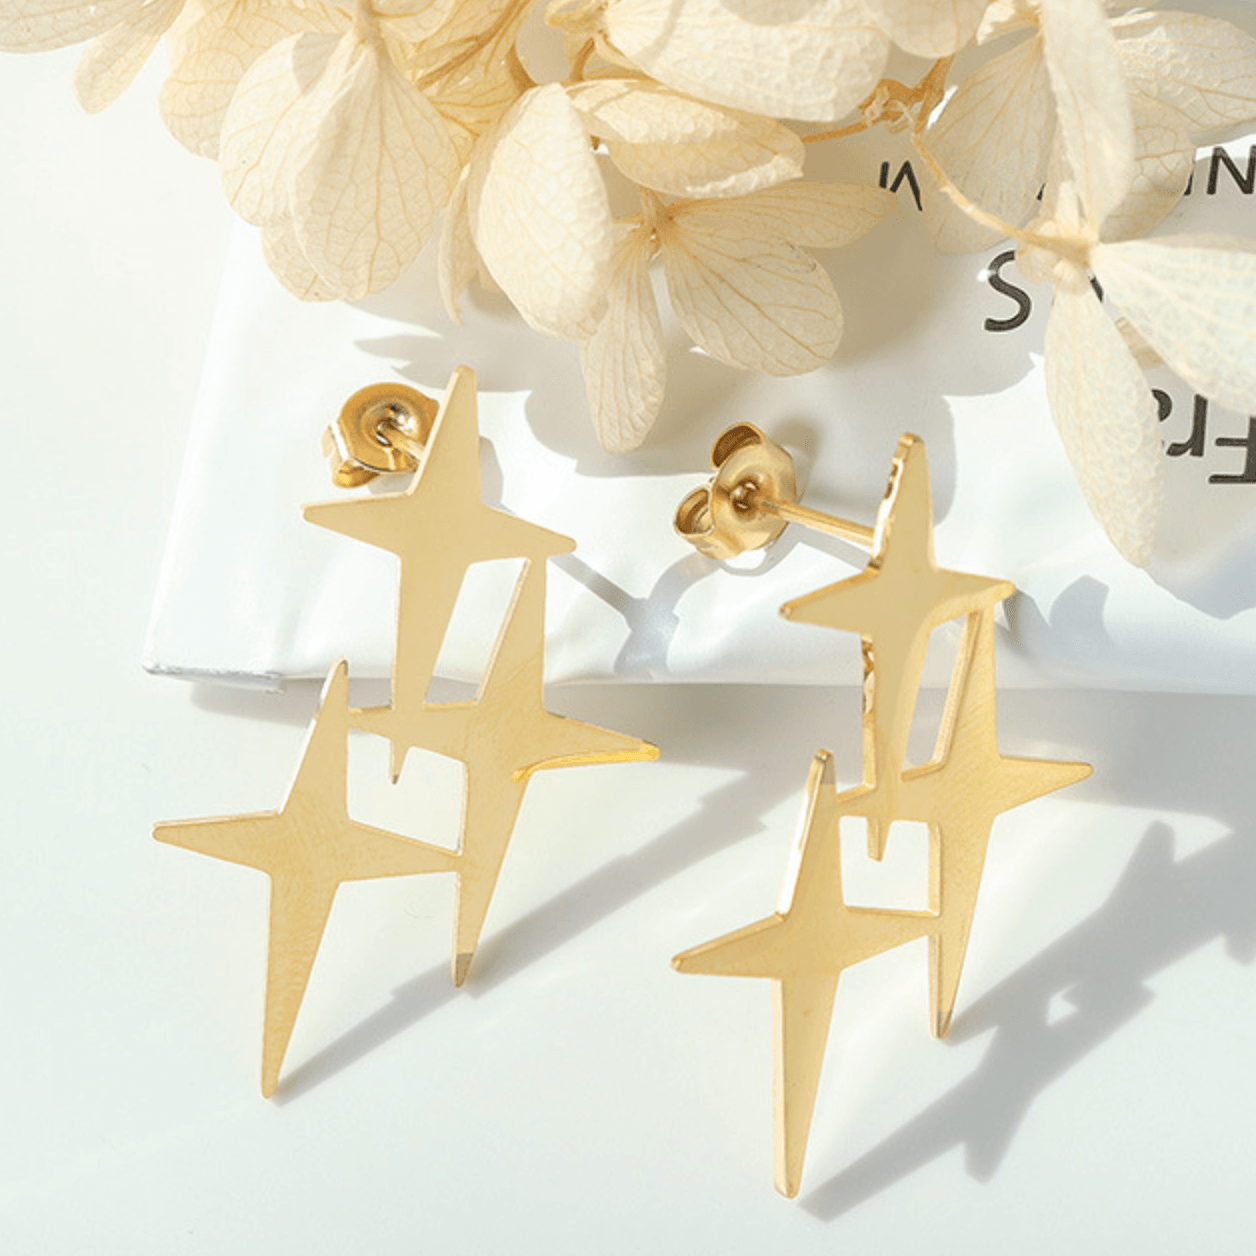 Cross Star Earrings